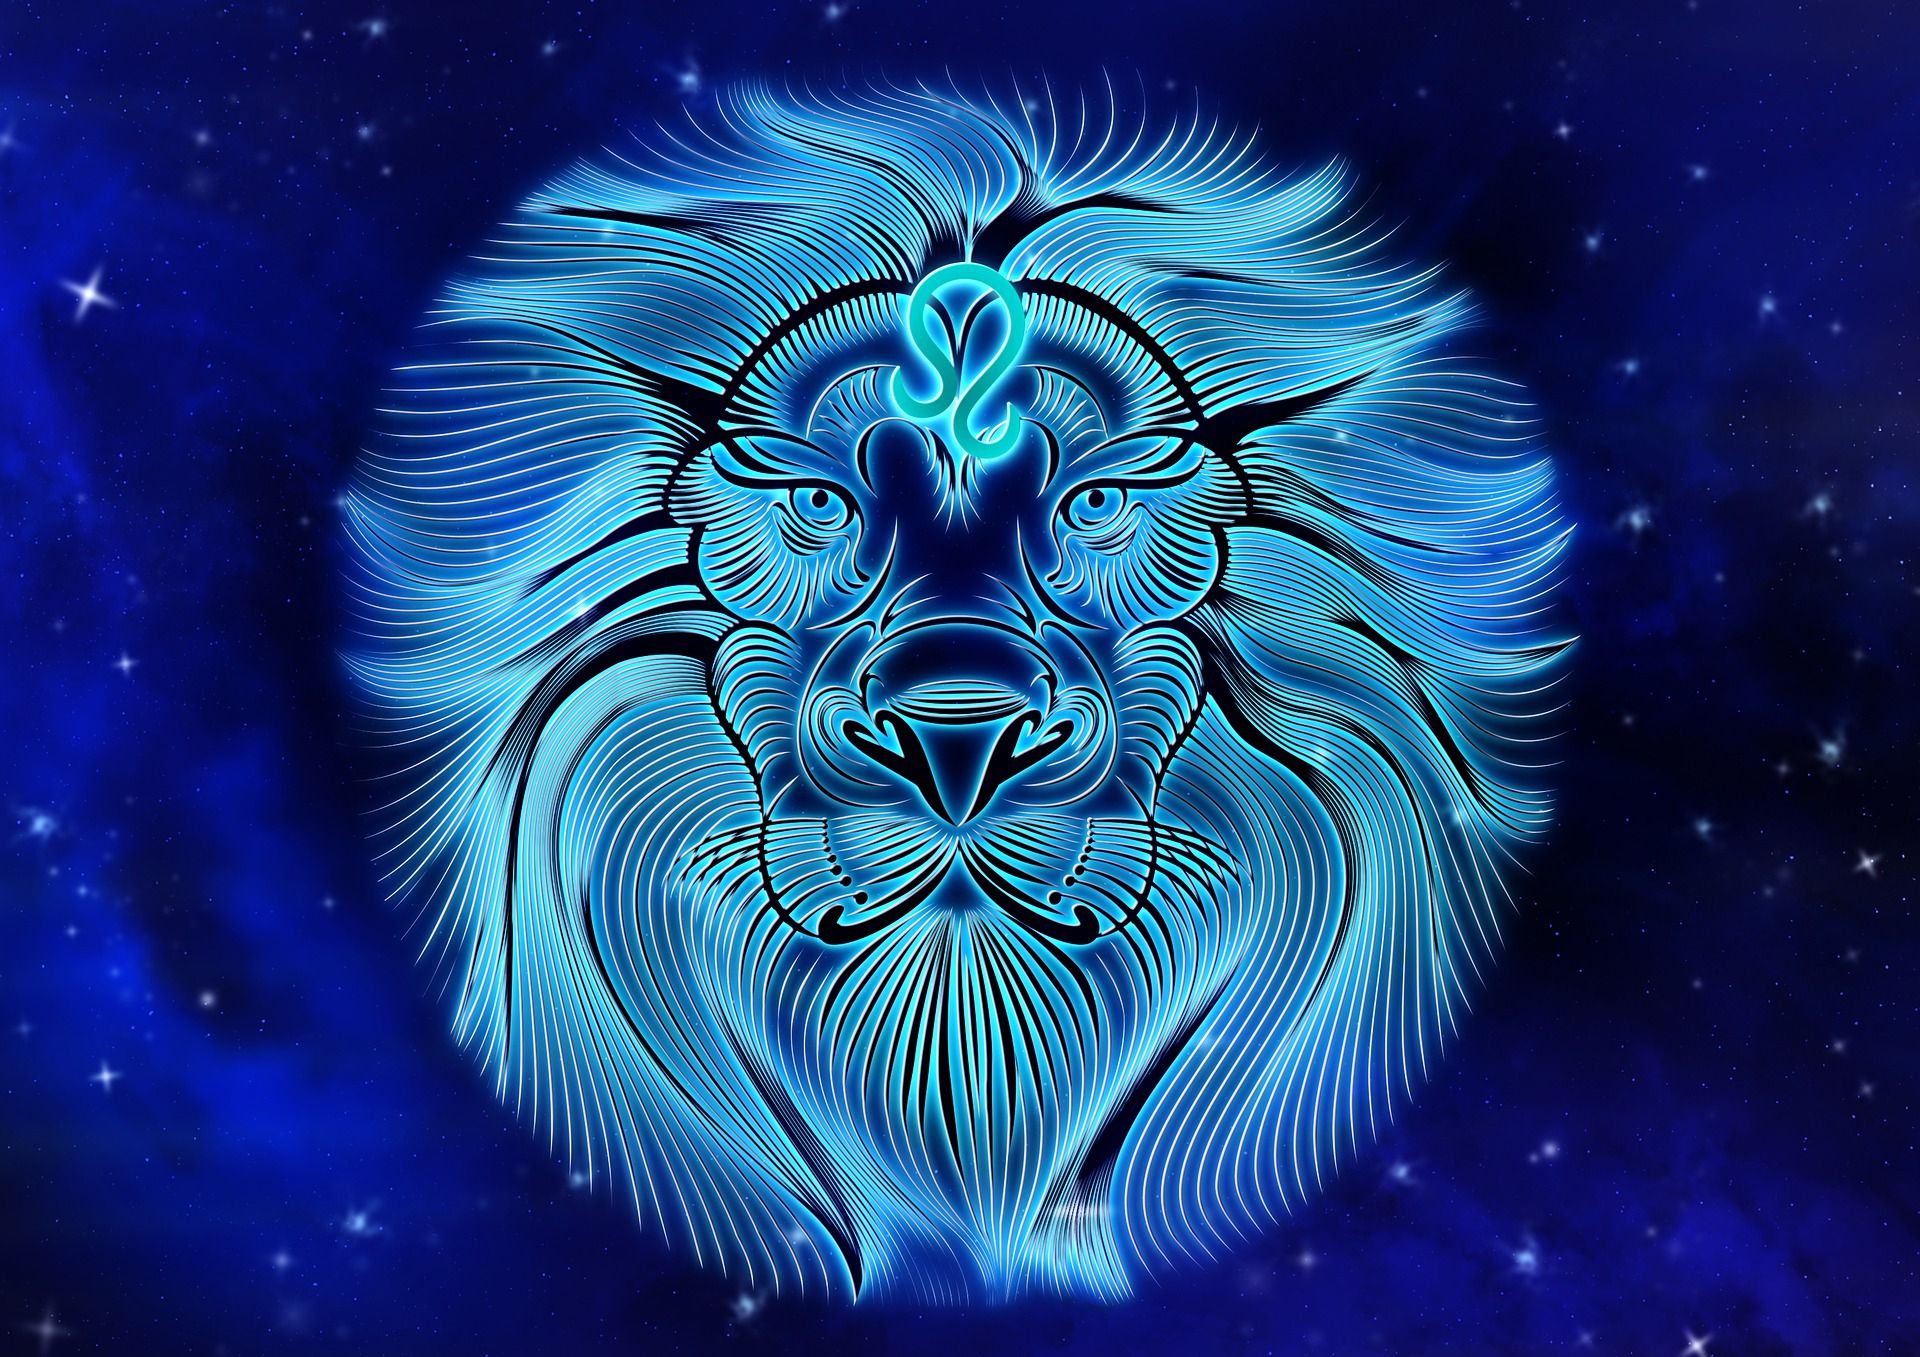 Blue Leo the Lion